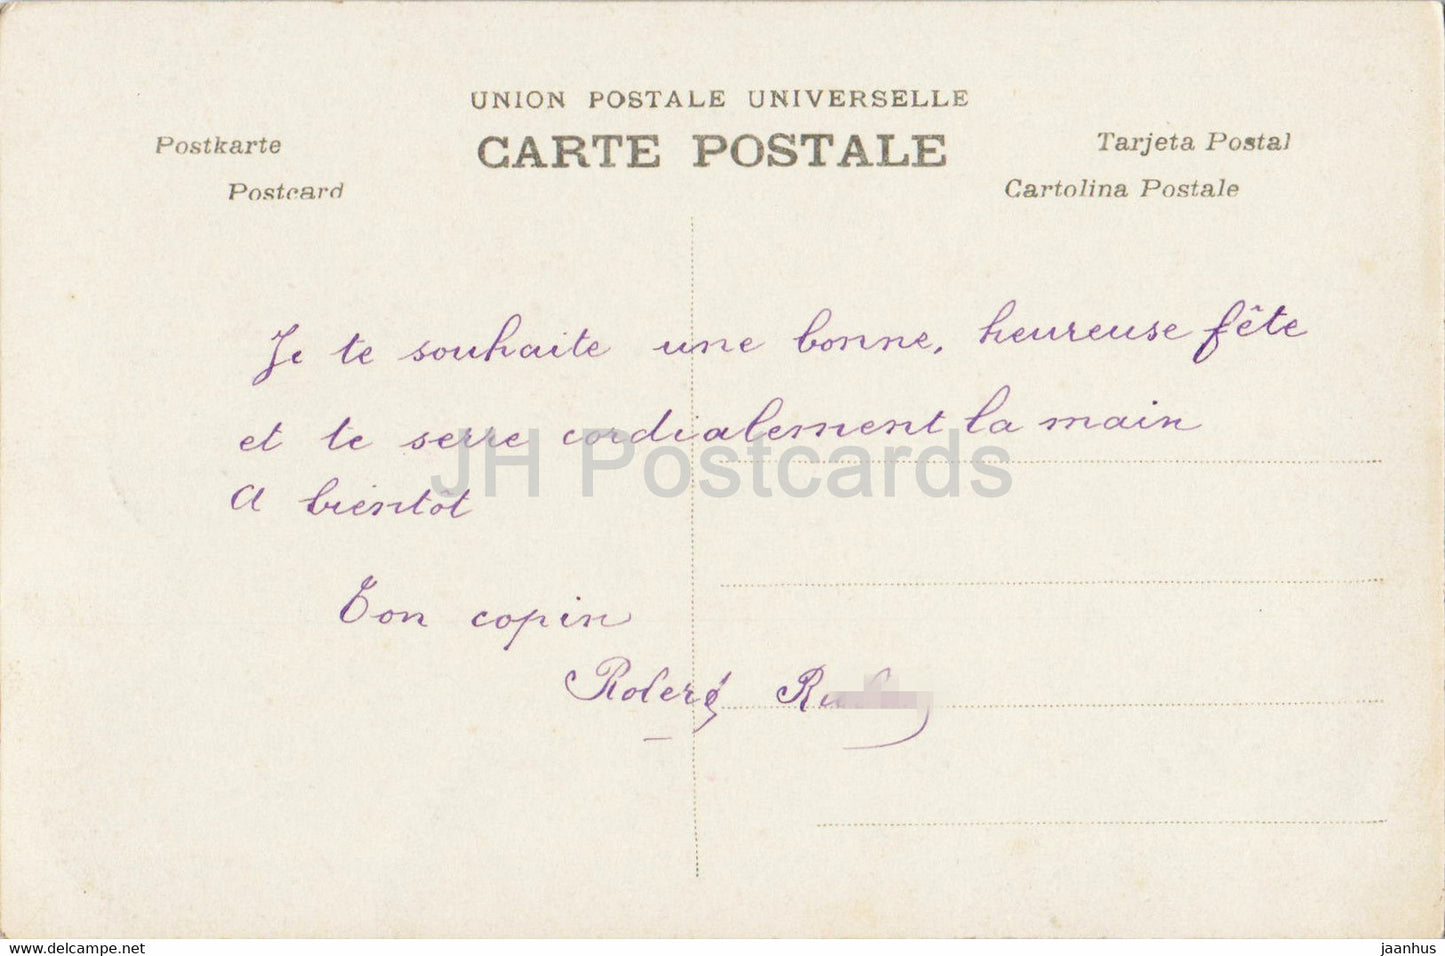 Geburtstagsgrußkarte – Bonne Fete – Junge – 1076 – AN Paris – alte Postkarte – Frankreich – gebraucht